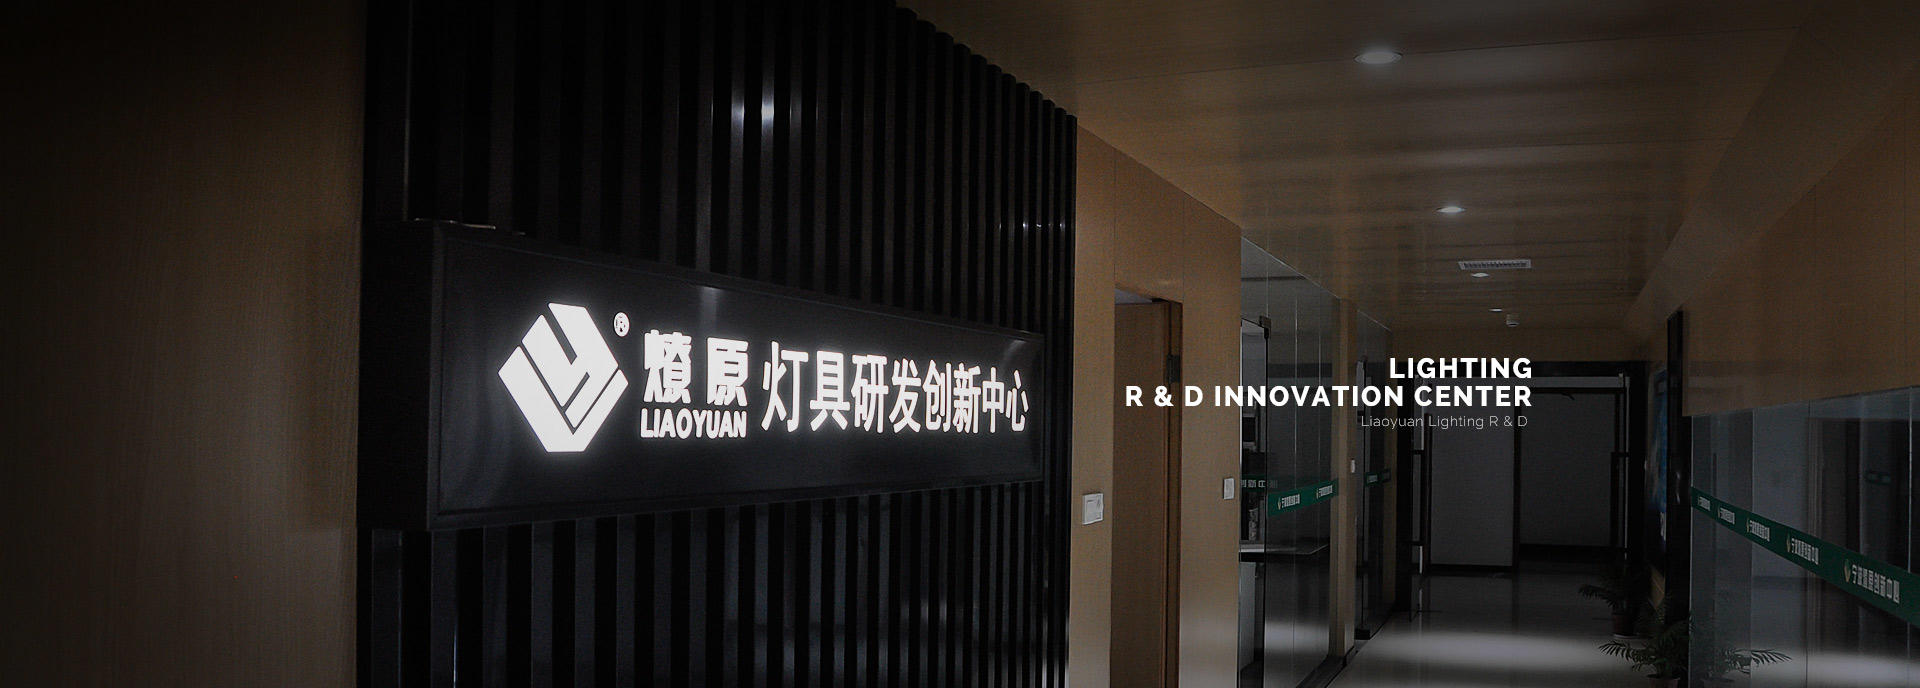 lighting R & D Innovation Center